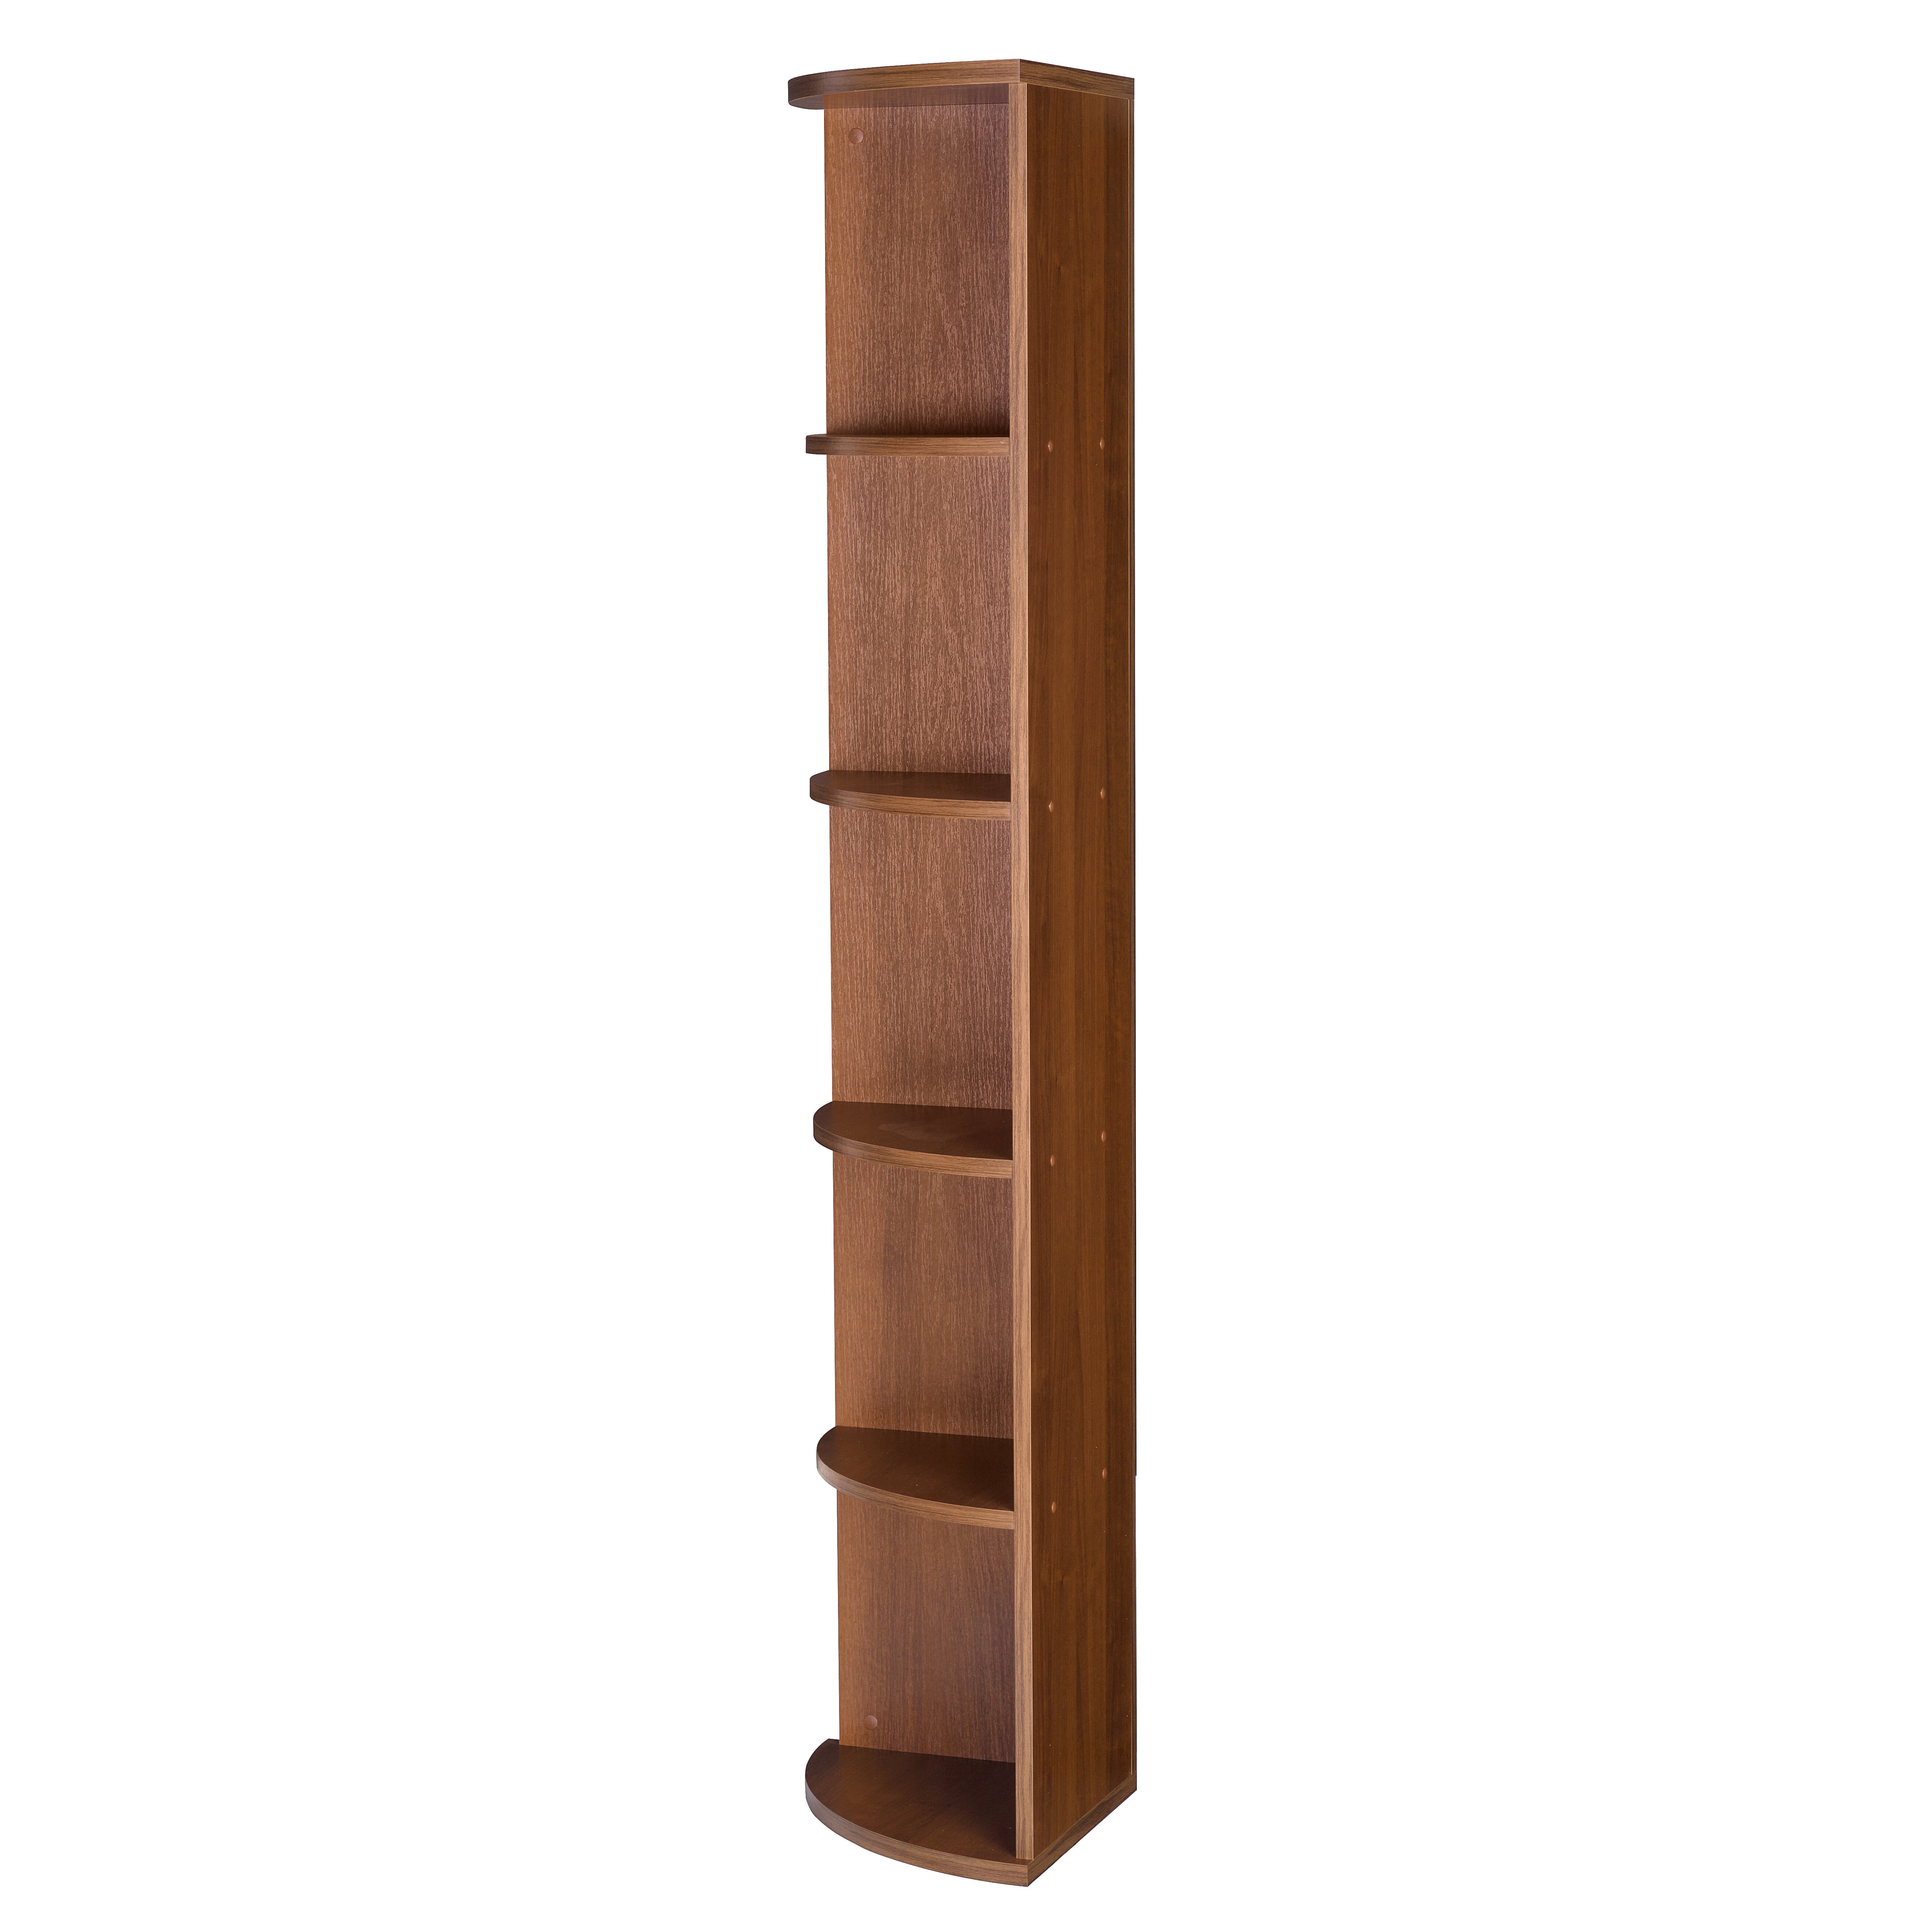 Unique Tall Corner Bookcase for Simple Design